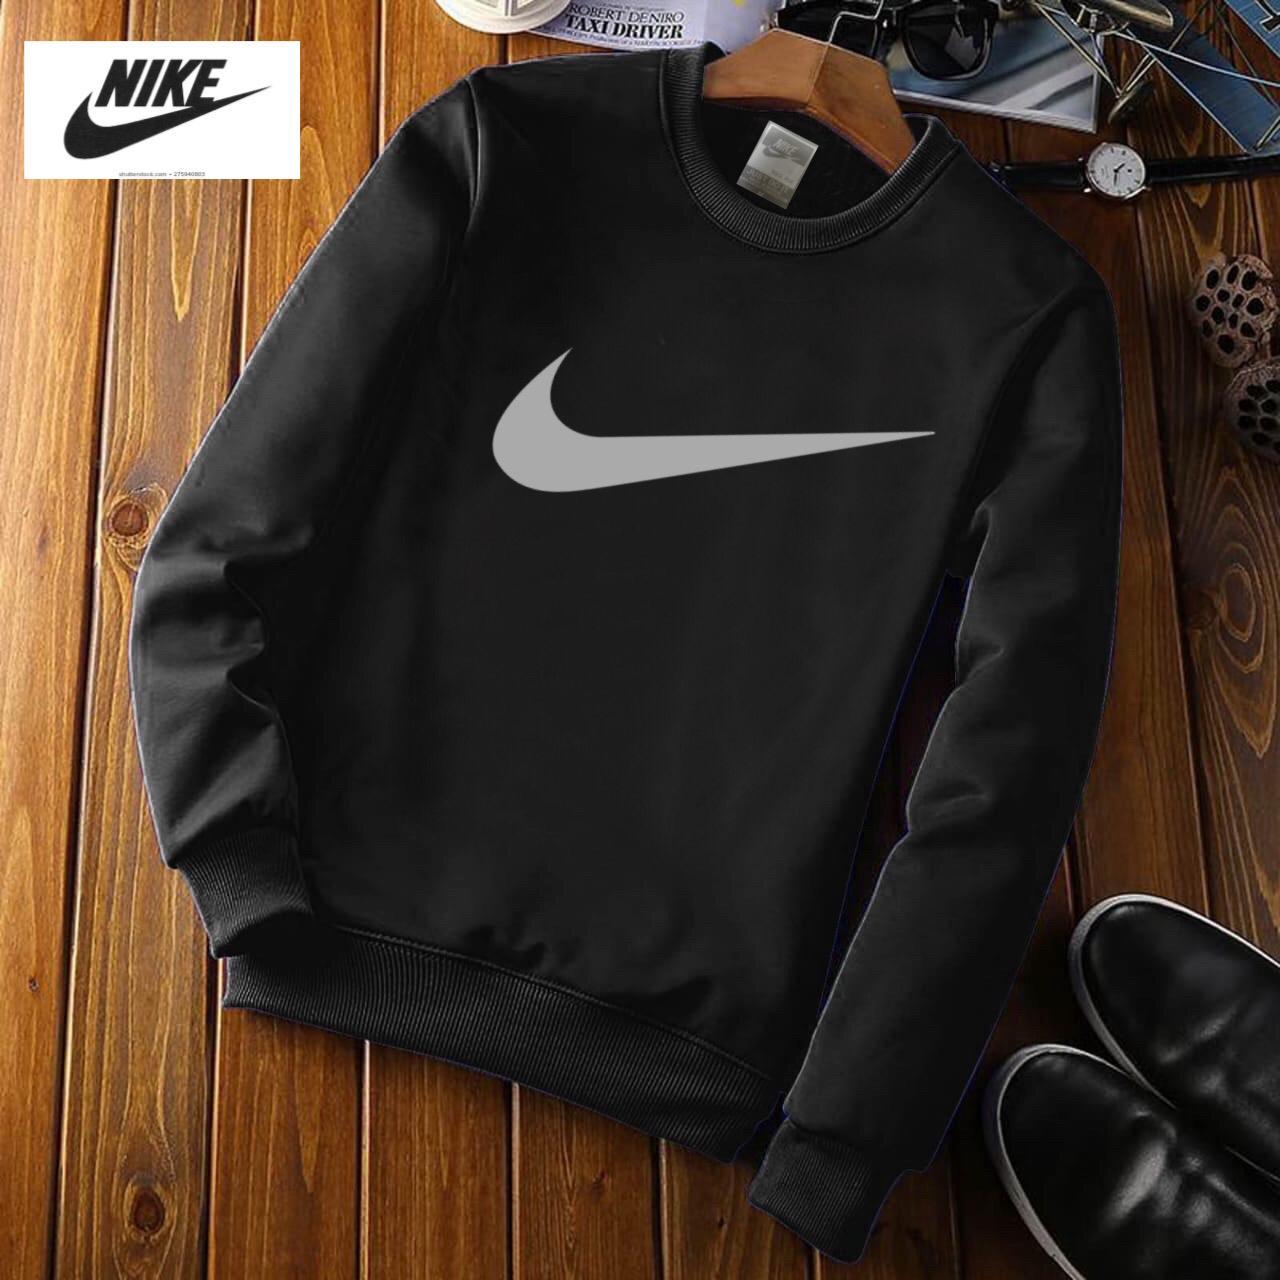 Nike Black Sweat Shirts